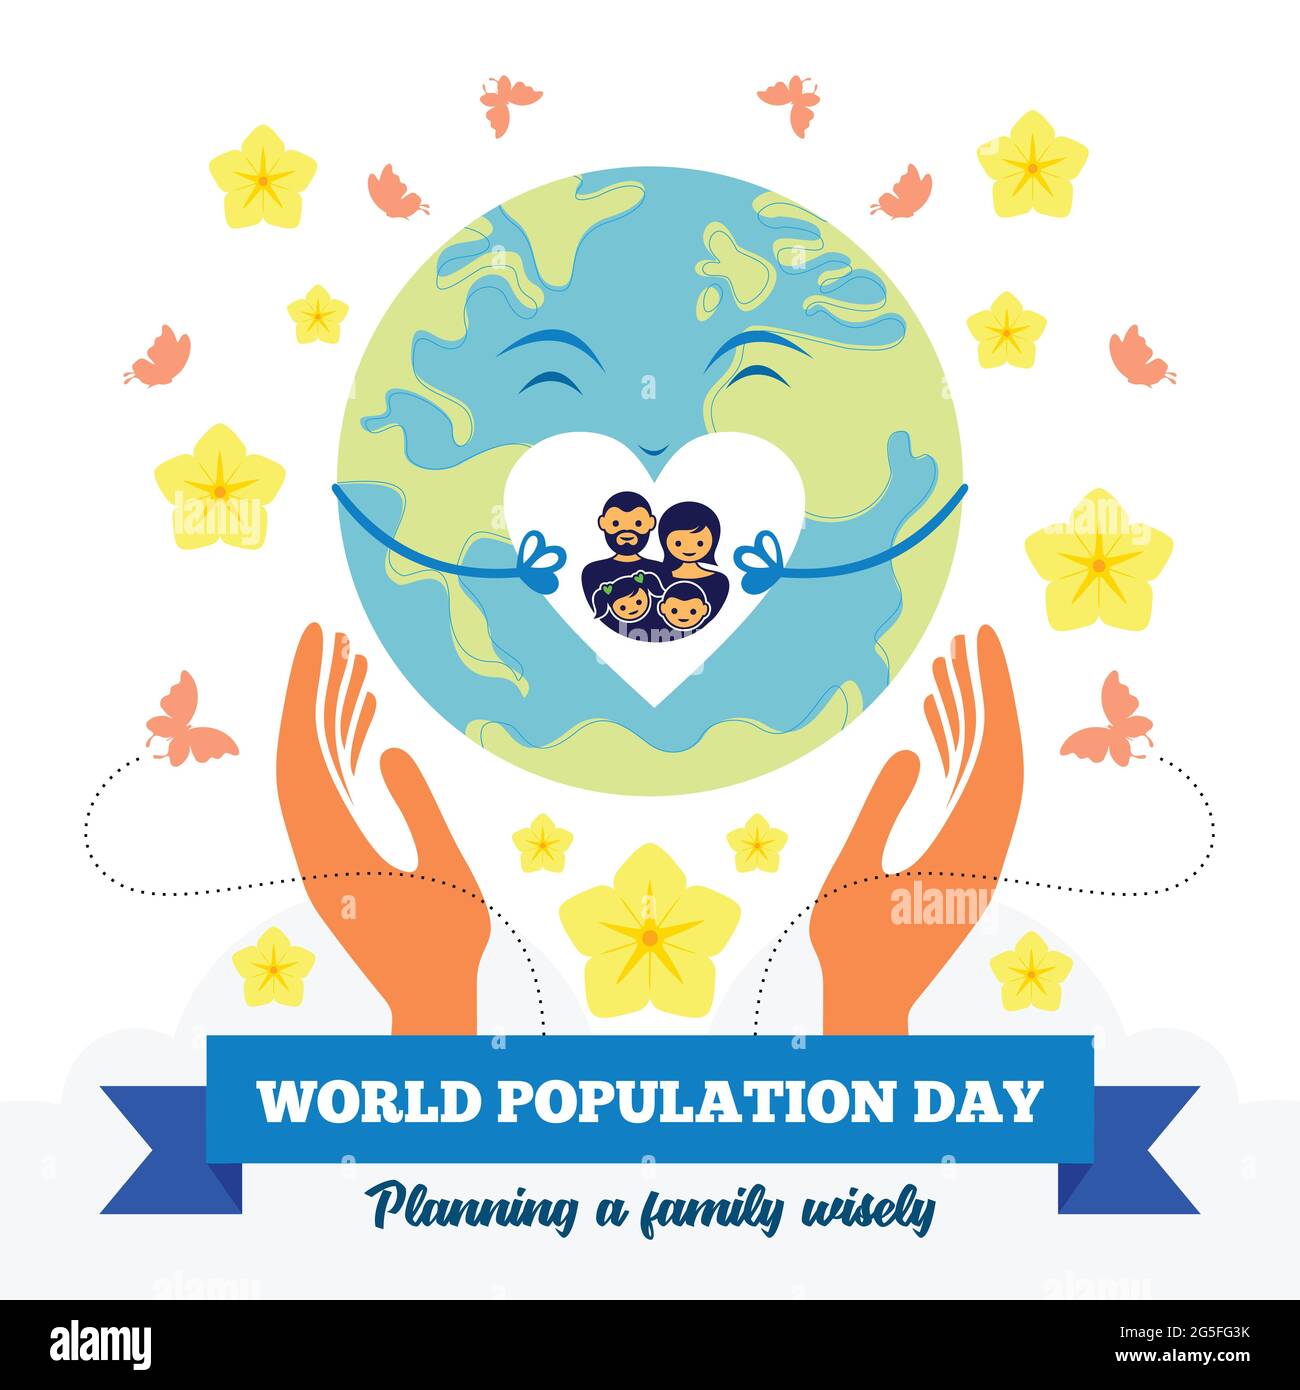 Illustration der Weltbevölkerung Tag auf der Erde, die von Händen gehalten wird und die Botschaft der Familienplanung mit vier Personen Familie. Stock Vektor